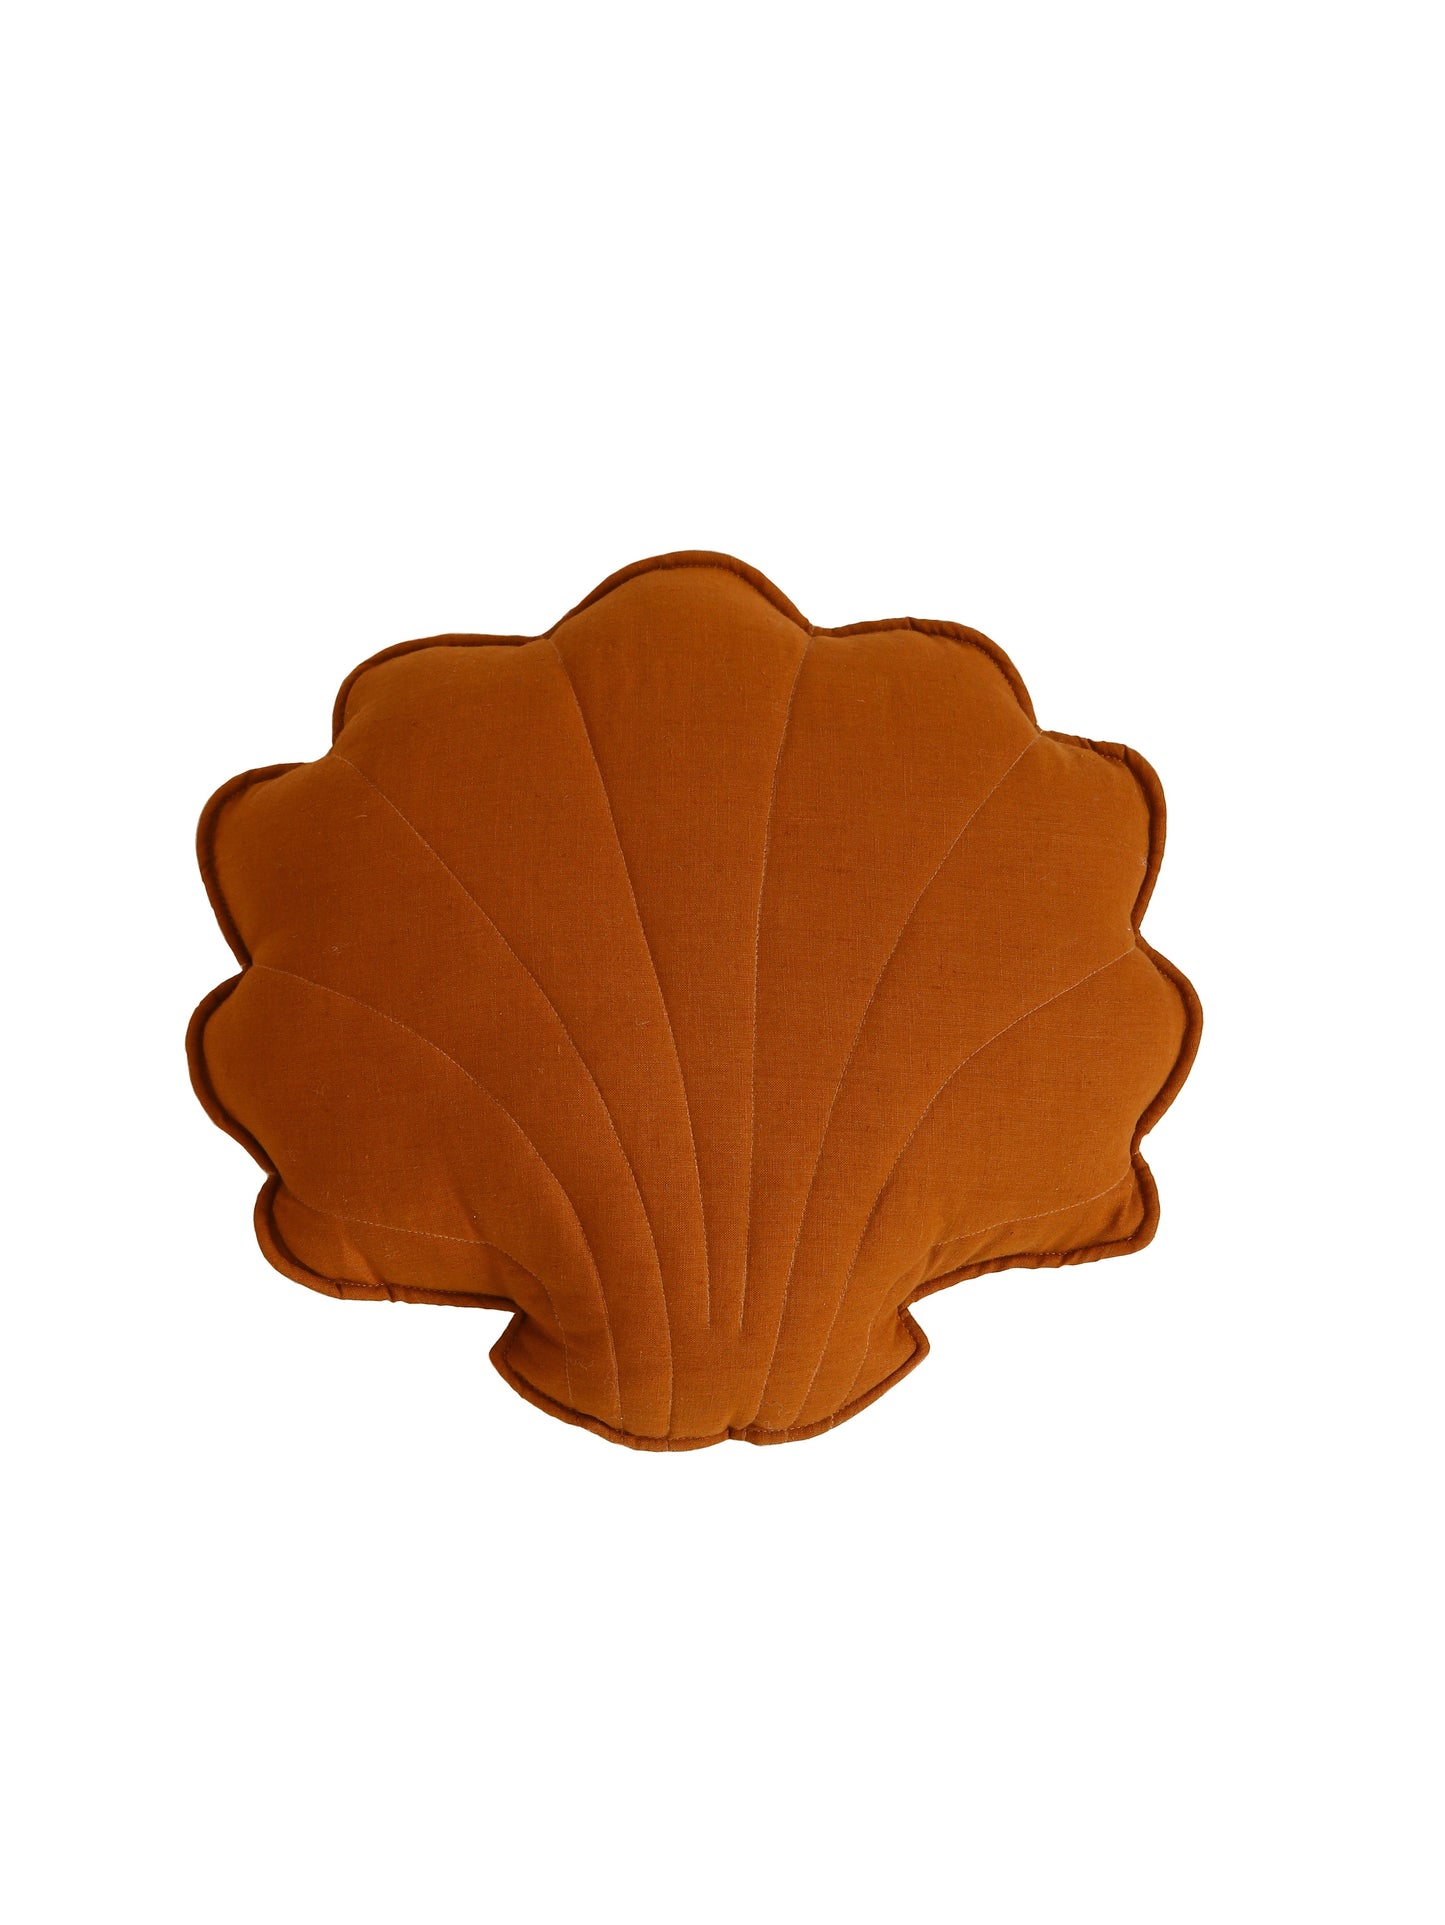 Linen “Caramel” Shell Pillow